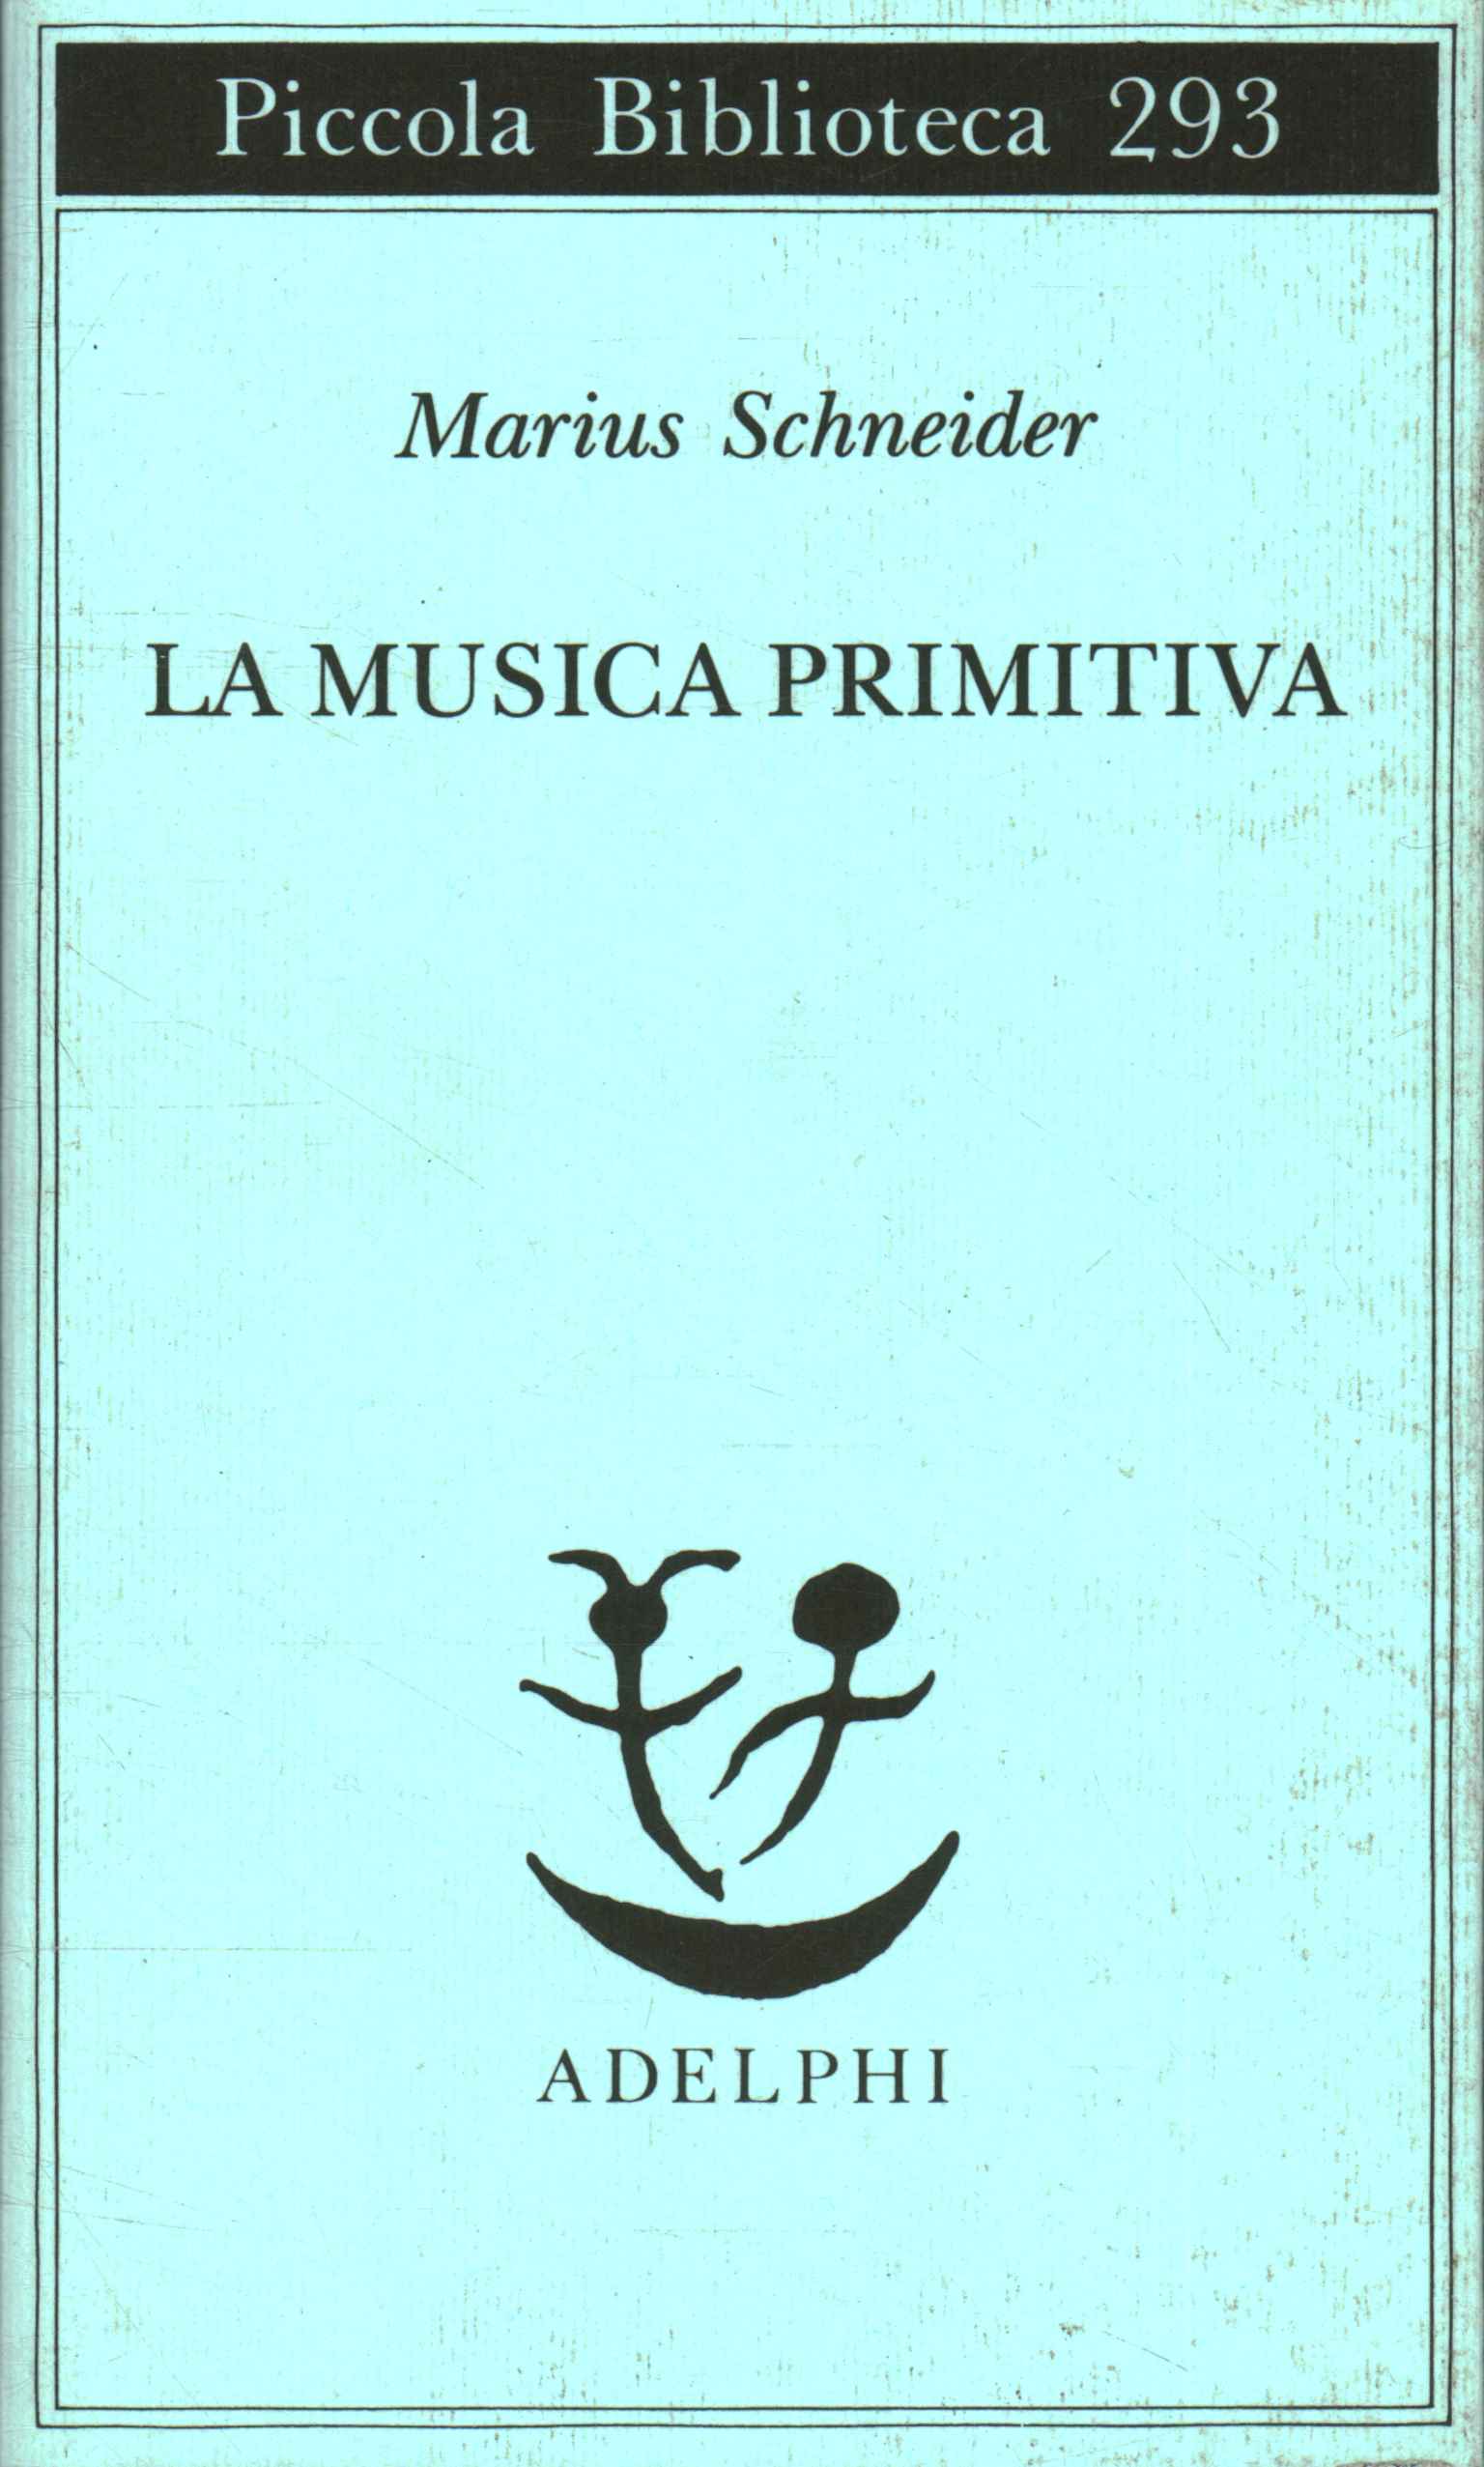 Primitive music